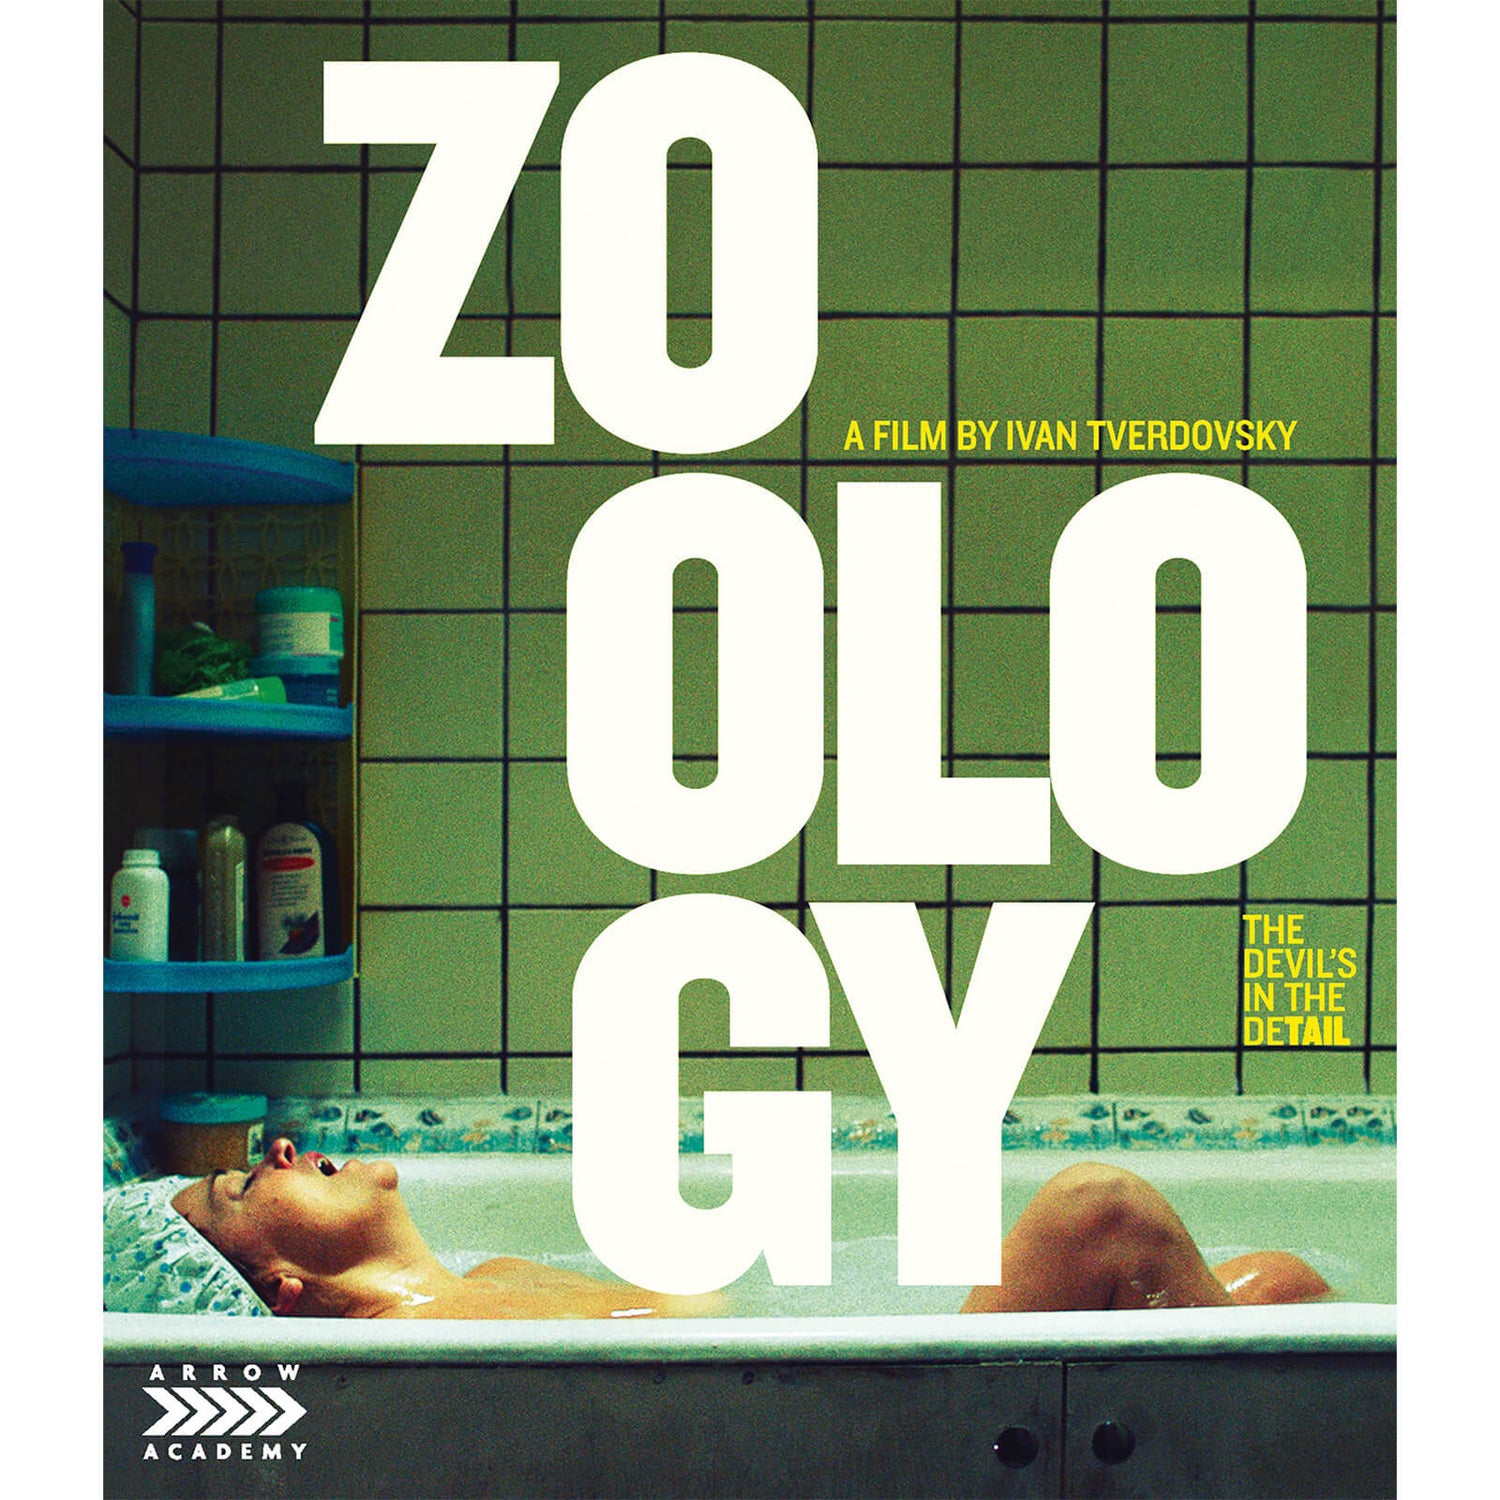 Zoology Blu-ray